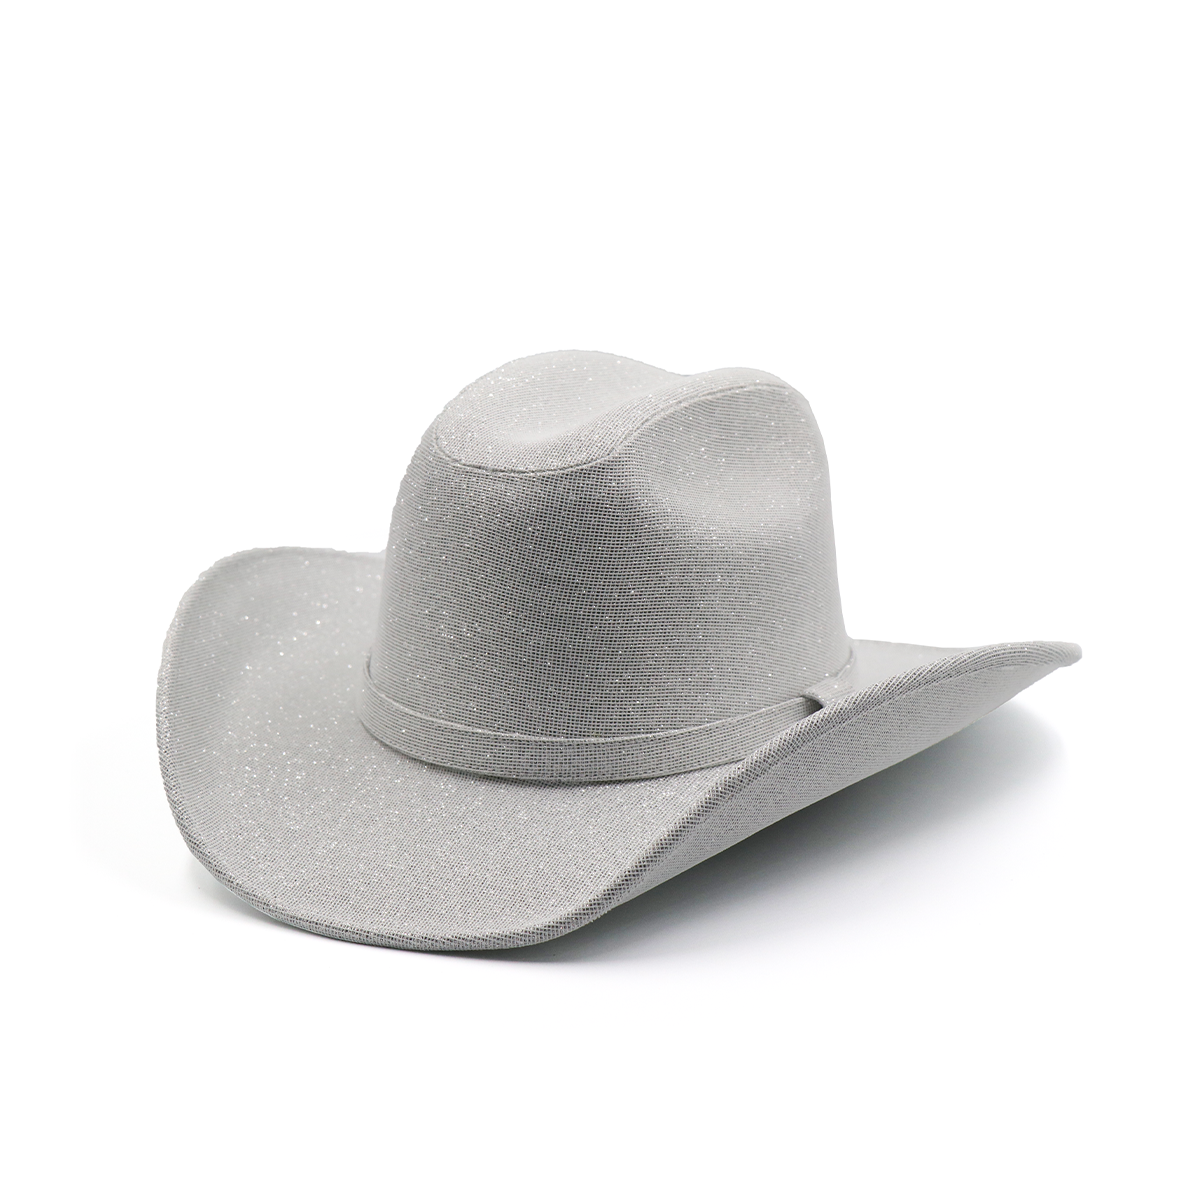 Sombrero Textil con Diseño Exclusivo Blanco - Formal -Cowboy